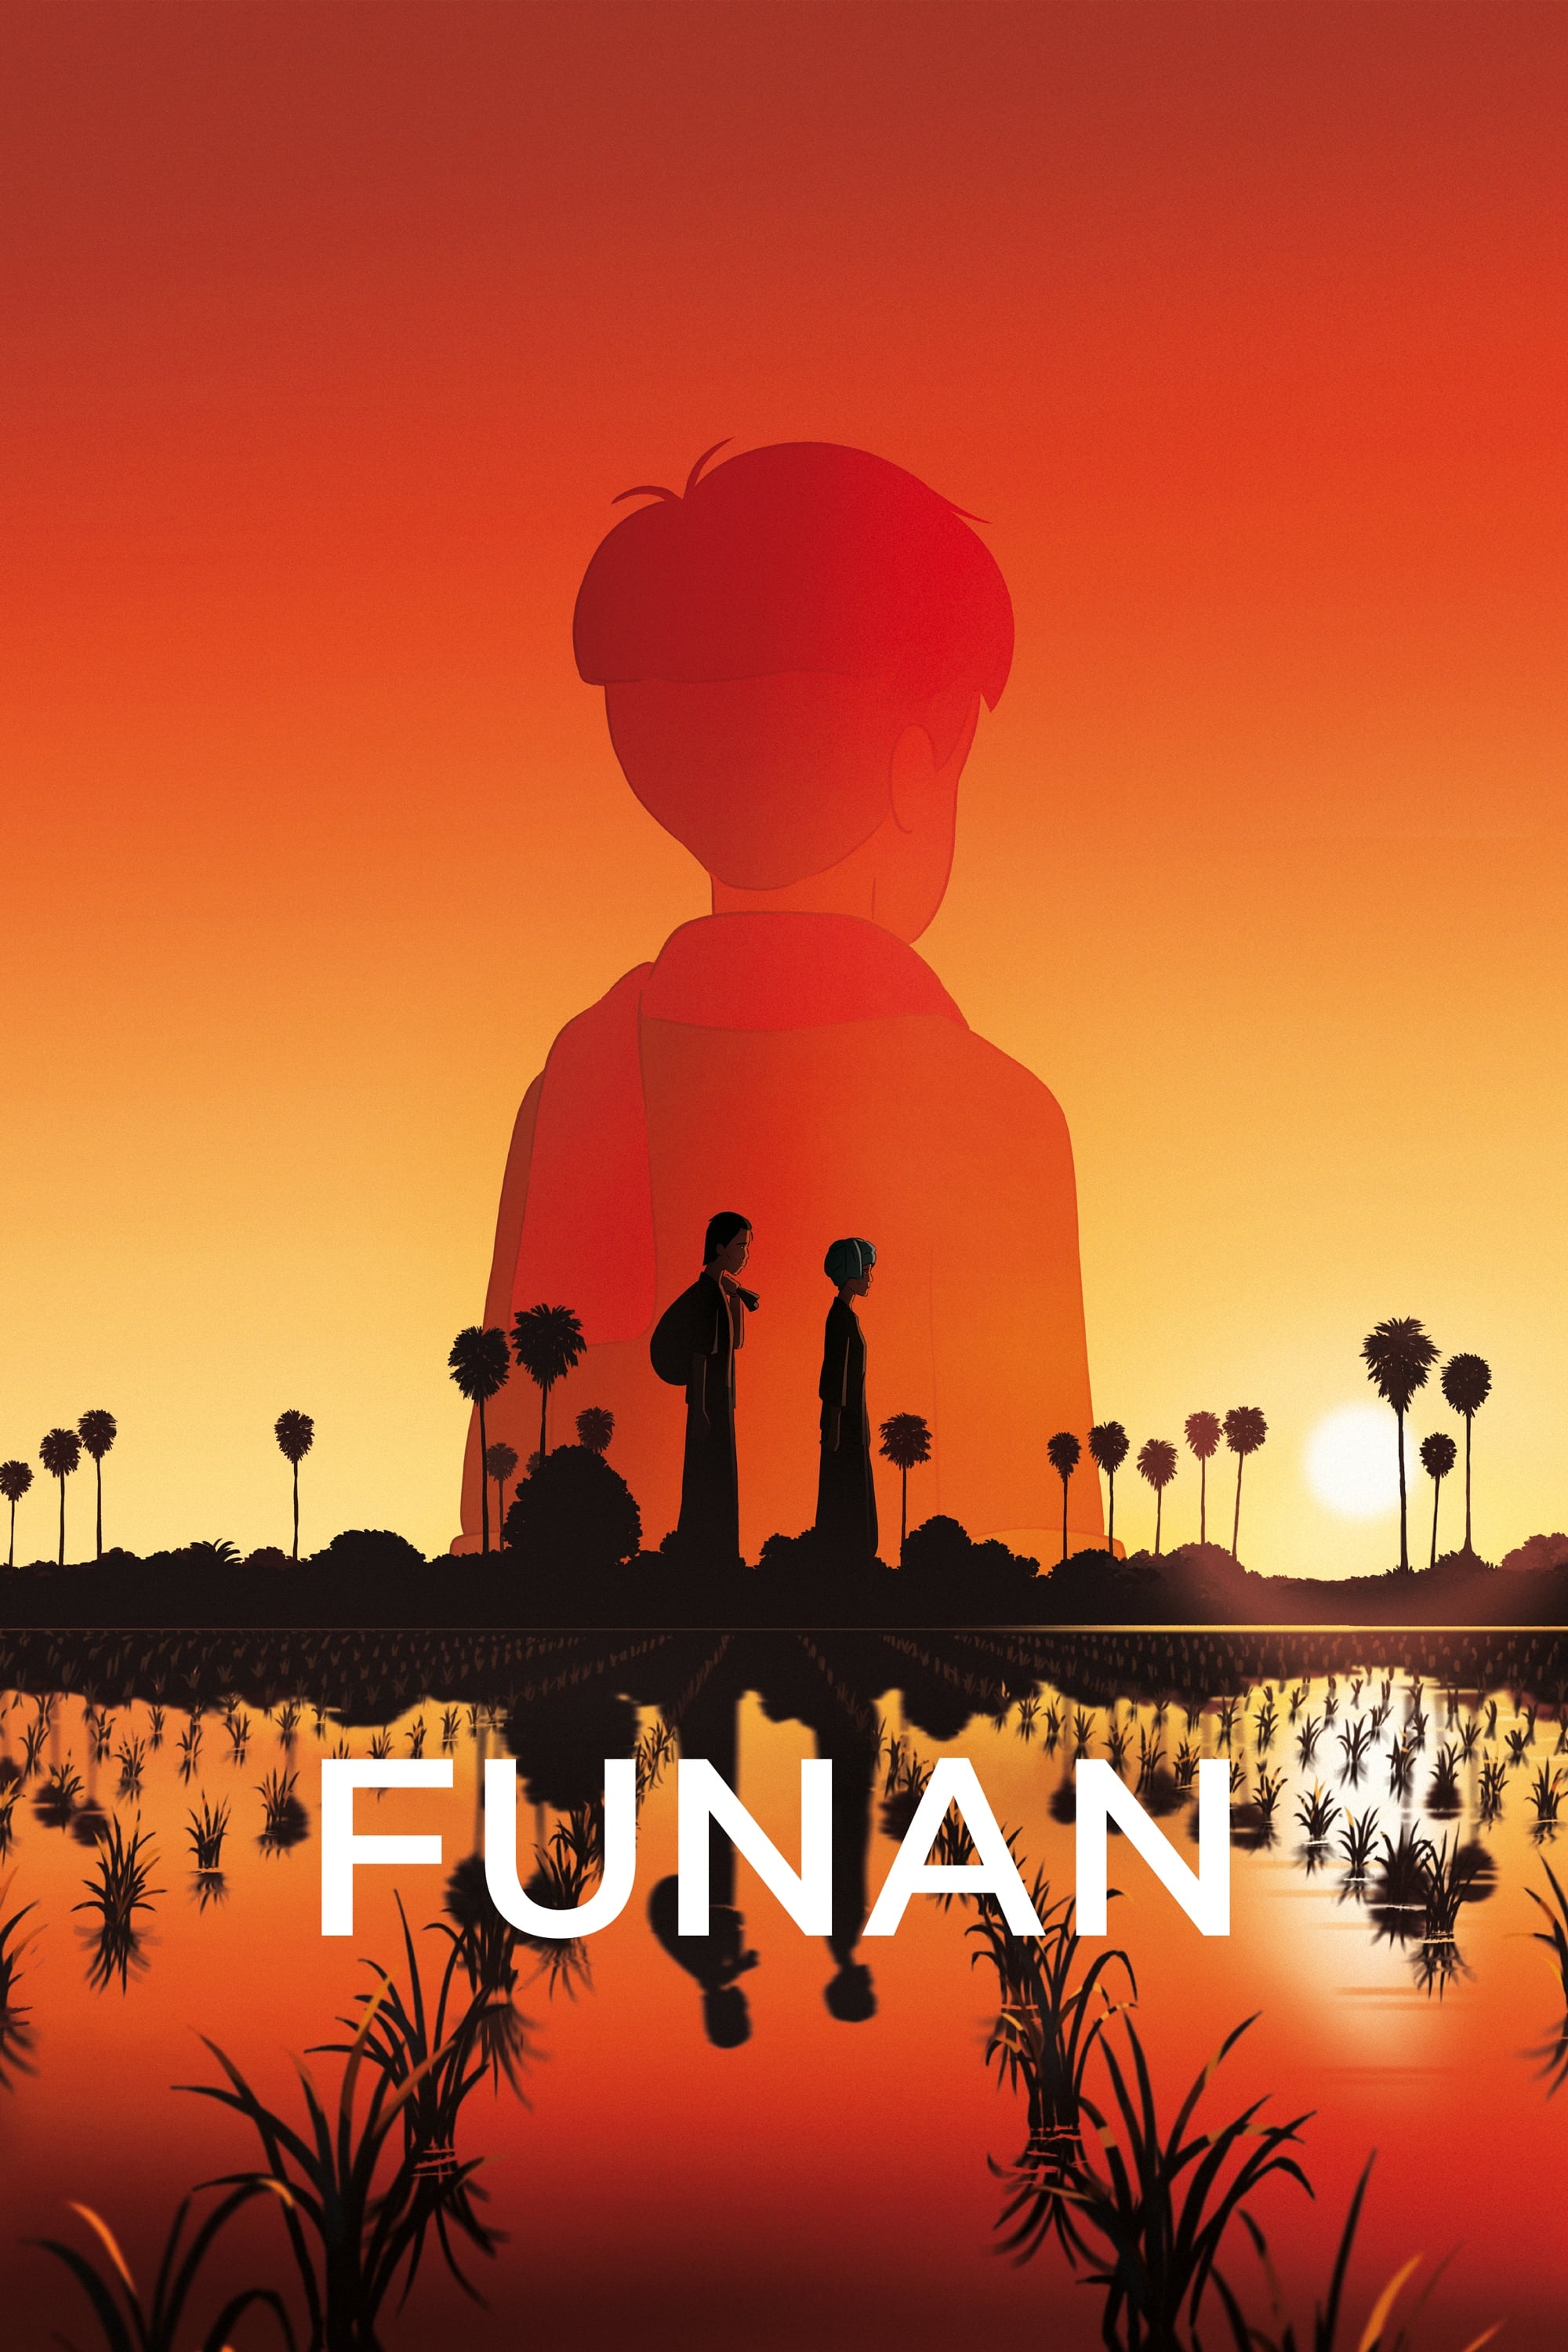 Watch Funan (2019) Full Movie at megafilm4k.com